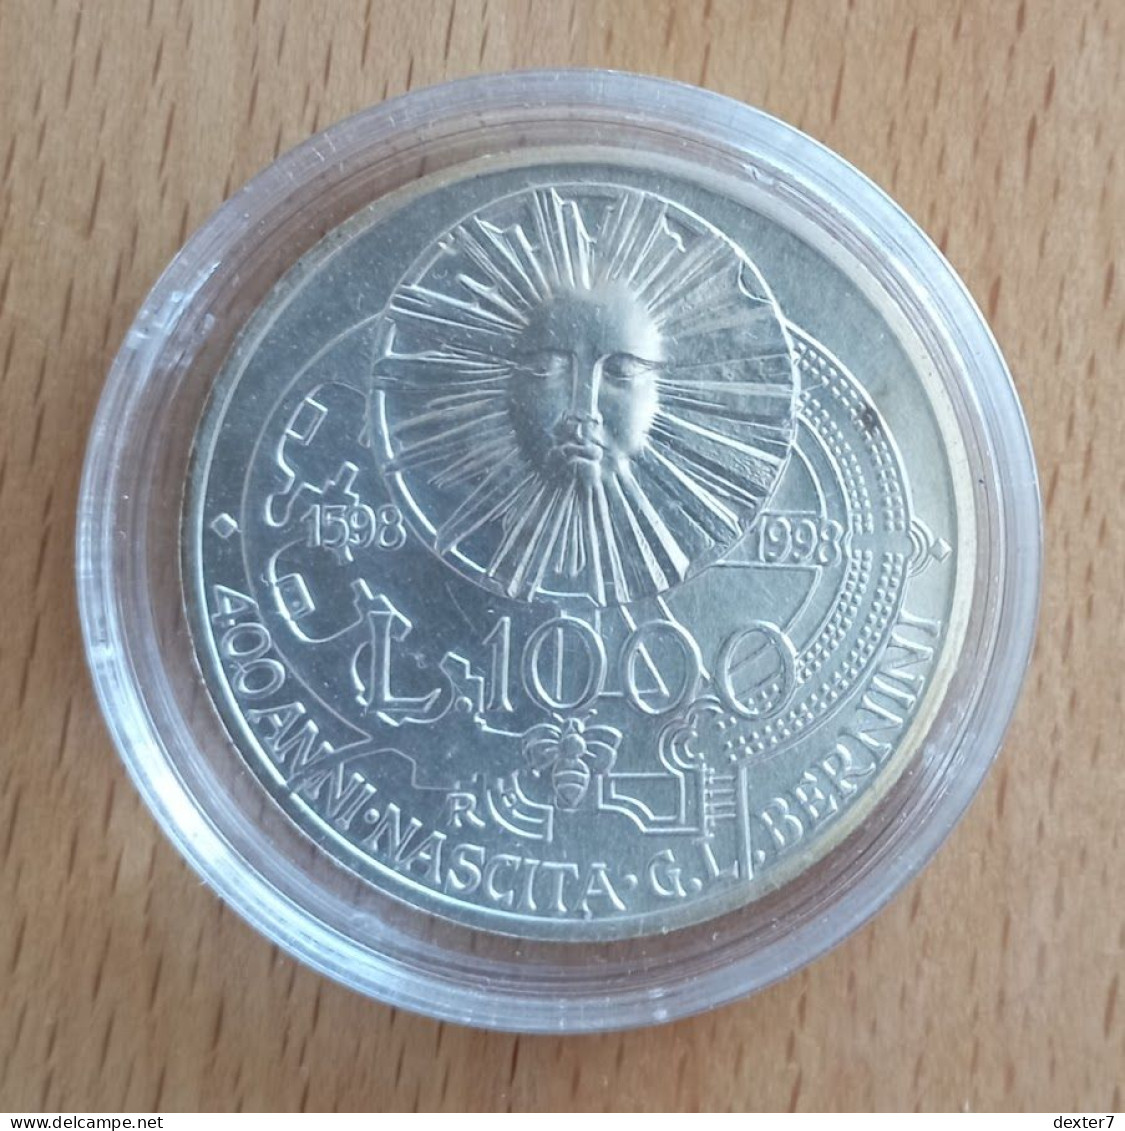 1998 Bernini 1.000 Lire UNC 1000 - 0,39 Oz Of Pure Silver - 500 Liras